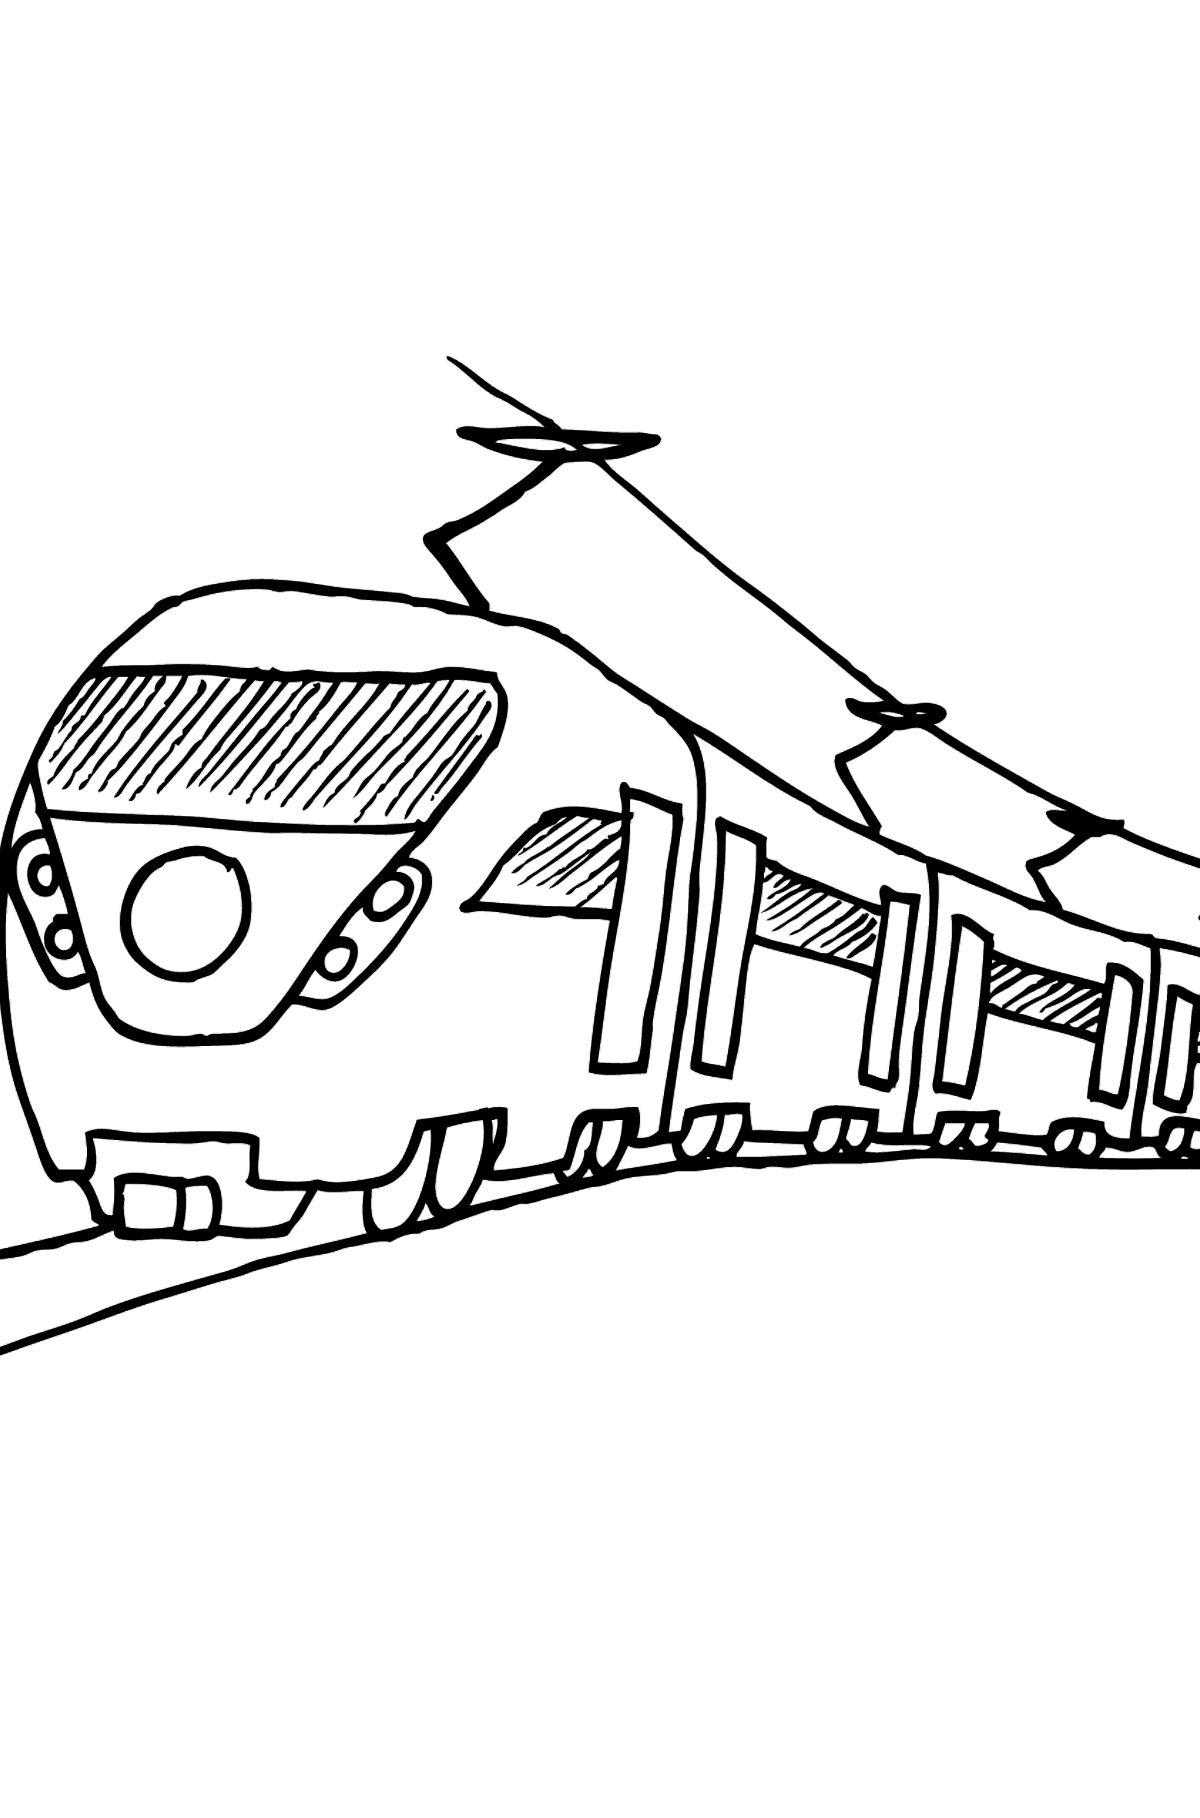 Boyama sayfası yolcu treni - Boyamalar çocuklar için